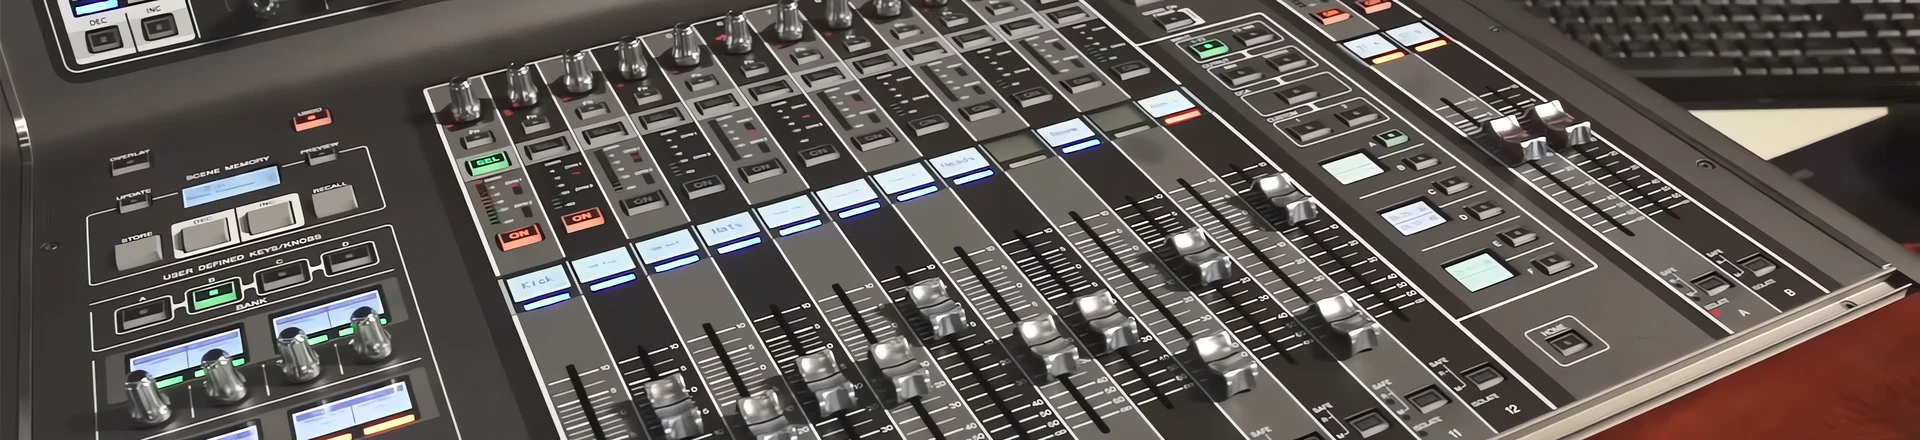 Yamaha PM10 Rivage i inne nowości z Prolight+Sound 2016 [Video]